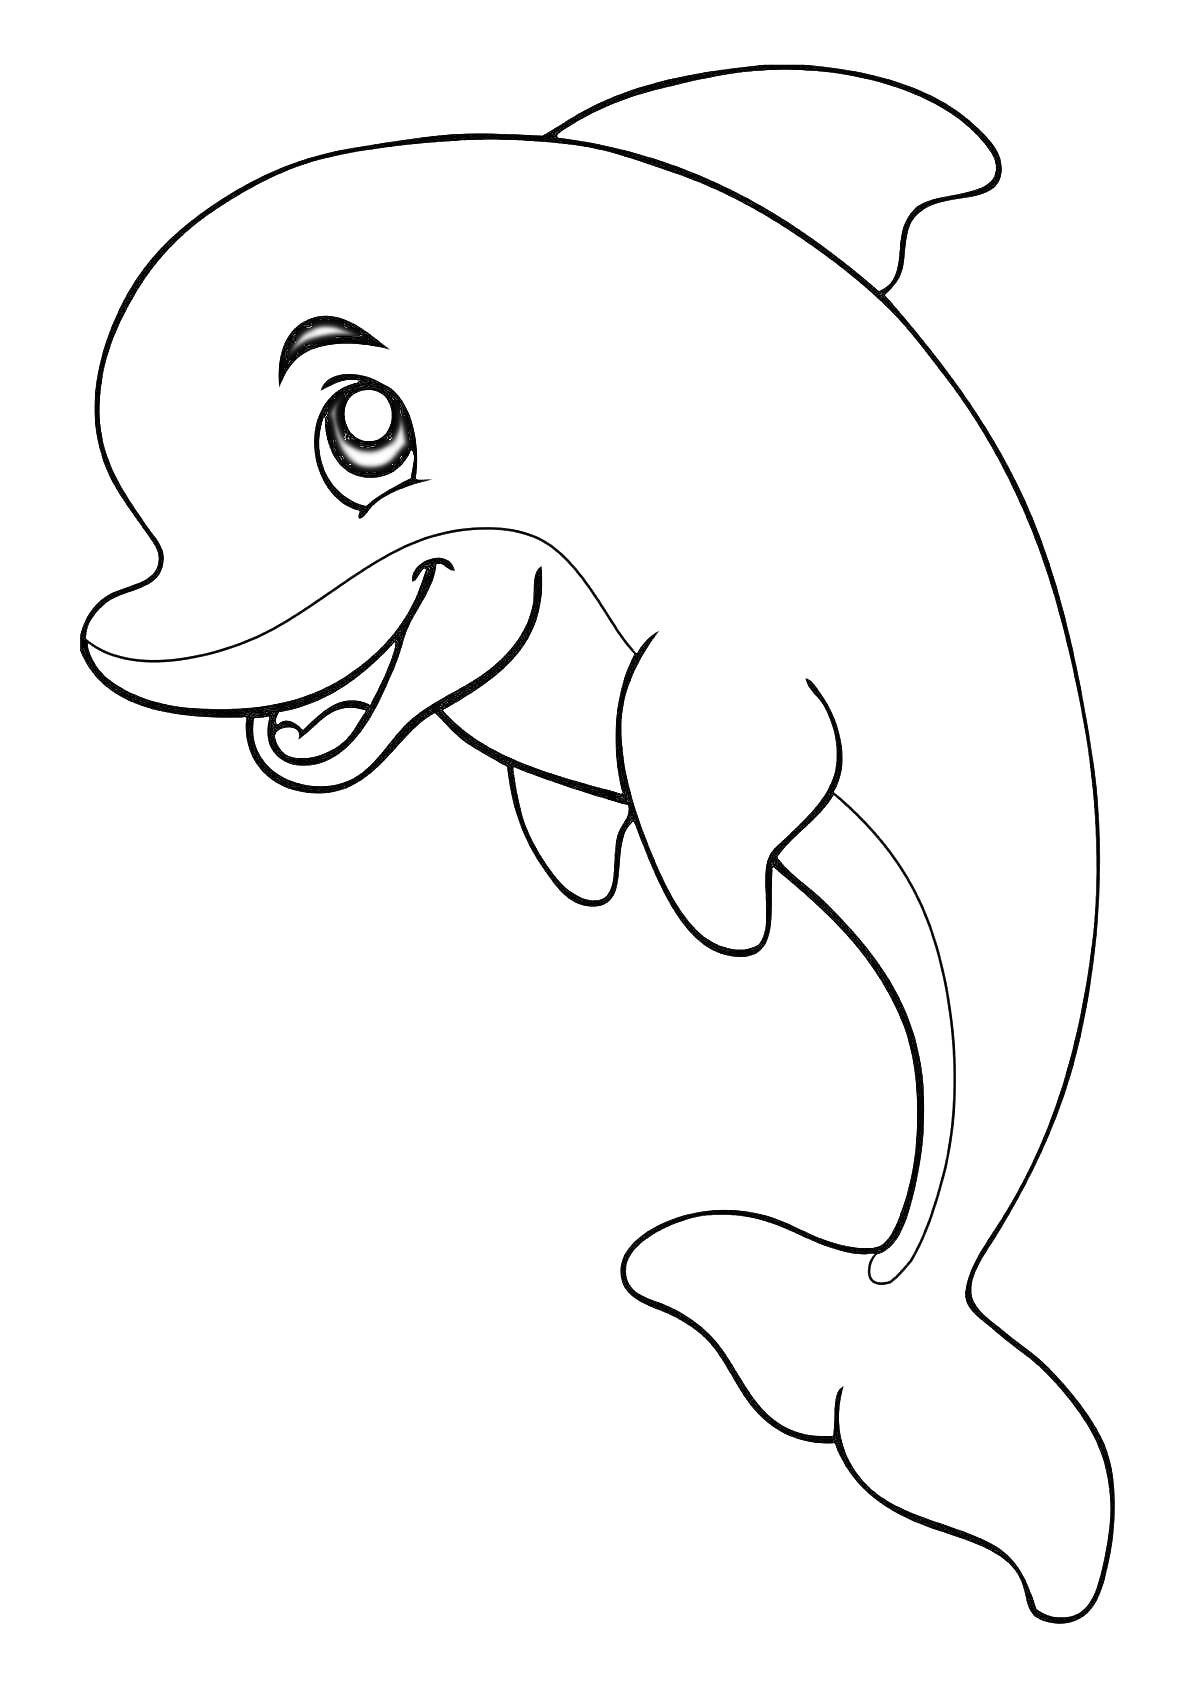 Раскраска Дельфин, улыбающийся и плывущий в воде, с большим глазом и плавниками